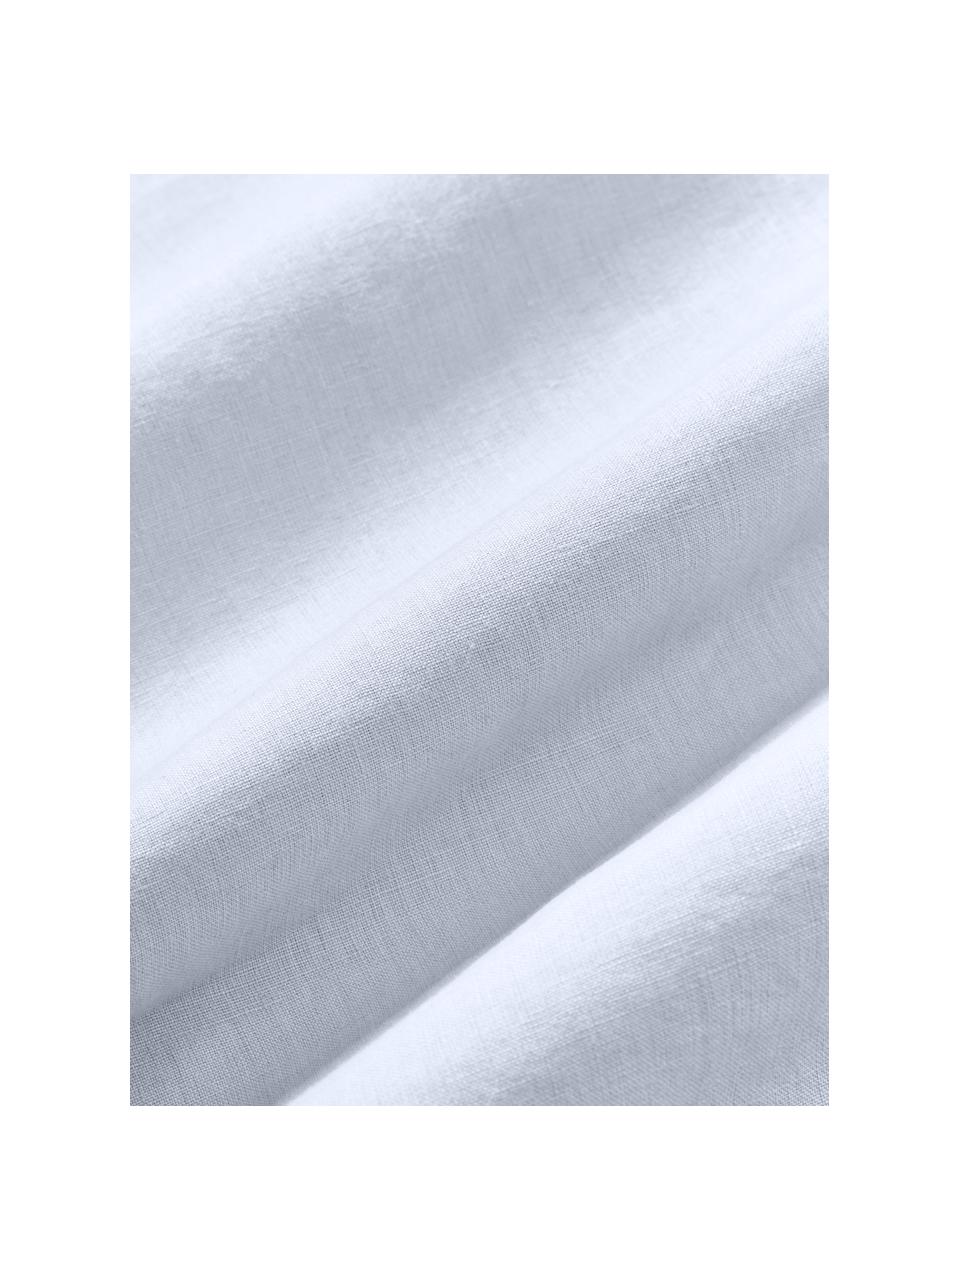 Ľanová posteľná plachta s vypraným vzhľadom Airy, 100 % ľan
Hustota vlákna 110 TC, kvalita štandard
Ľan je prírodné vlákno vyznačujúce sa priedušnosťou, odolnosťou a mäkkosťou. Ľan je chladivý a savý materiál, ktorý rýchlo absorbuje a odvádza vlhkosť, vďaka čomu je ideálny do vysokých teplôt.

Materiál použitý v tomto výrobku bol testovaný na škodlivé látky a certifikovaný podľa STANDARD 100 od OEKO-TEX®, 15.HIN.65948, HOHENSTEIN HTTI., Svetlomodrá, Š 240 x D 280 cm